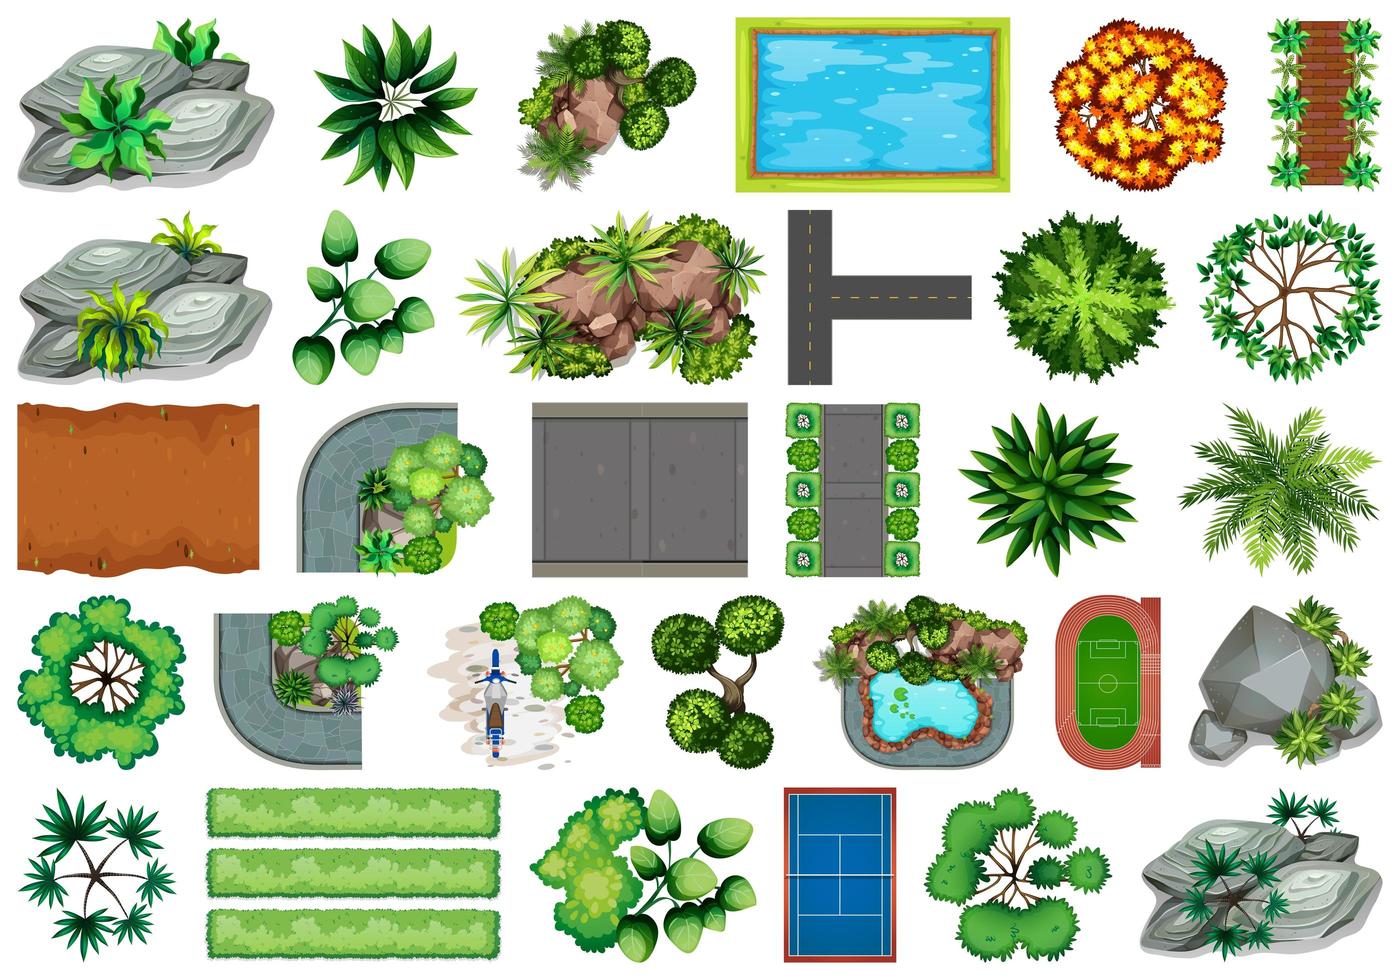 Sammlung themenorientierte Gegenstände und Pflanzenelemente der Natur im Freien vektor